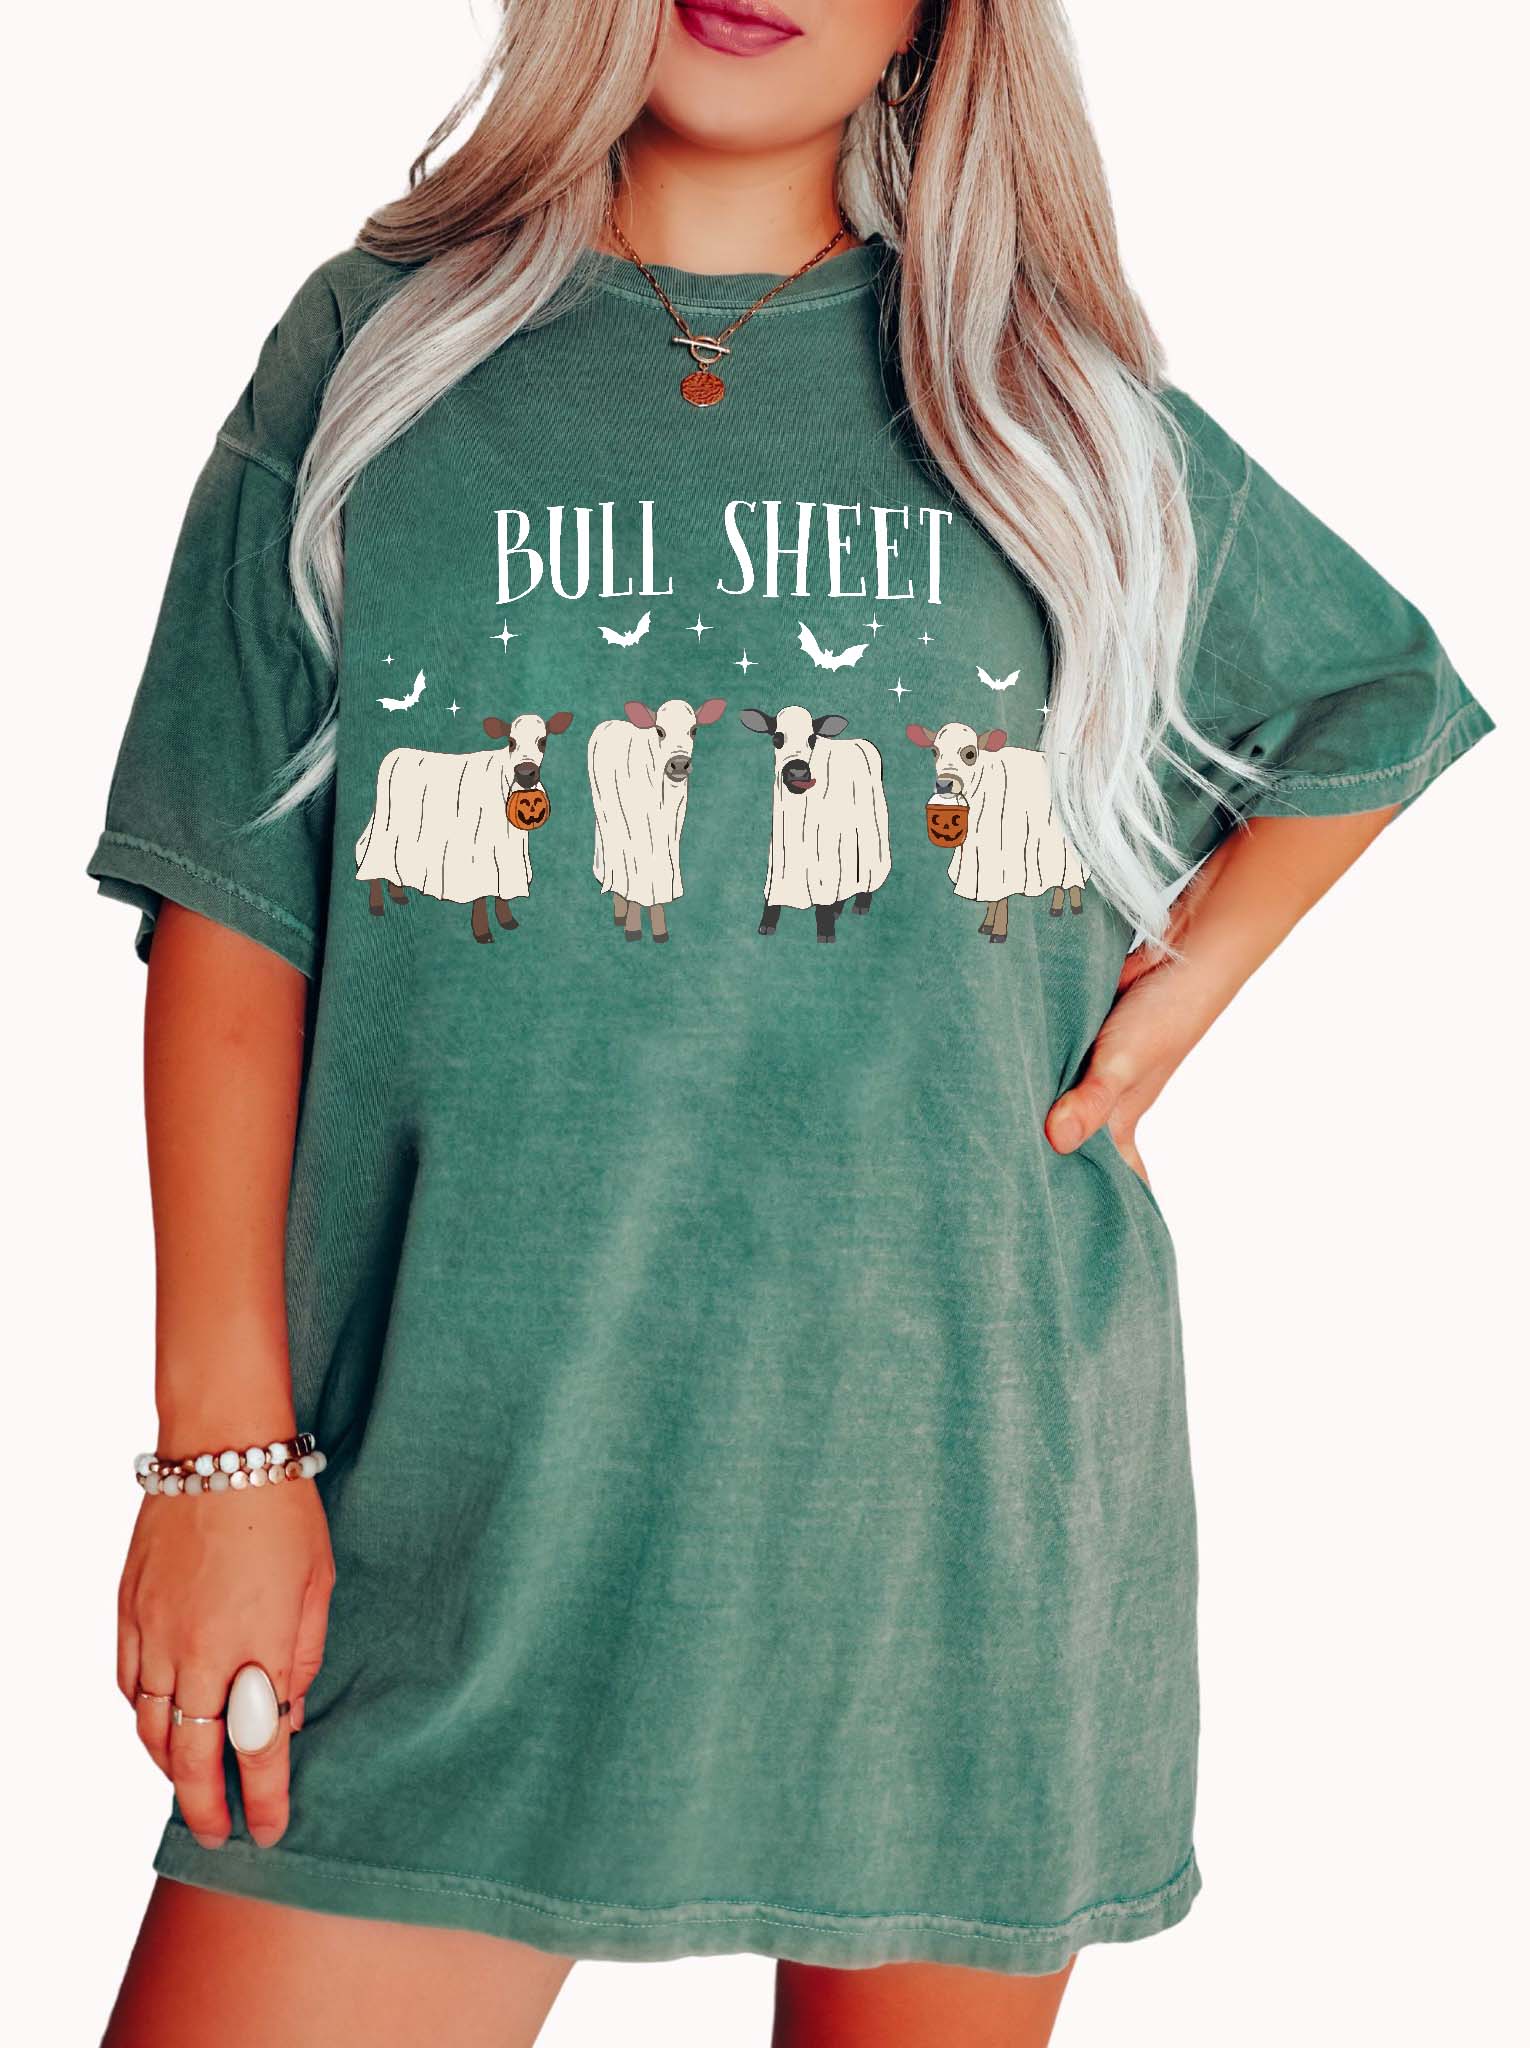 Bull-sheet Halloween Tee - UntamedEgo LLC.